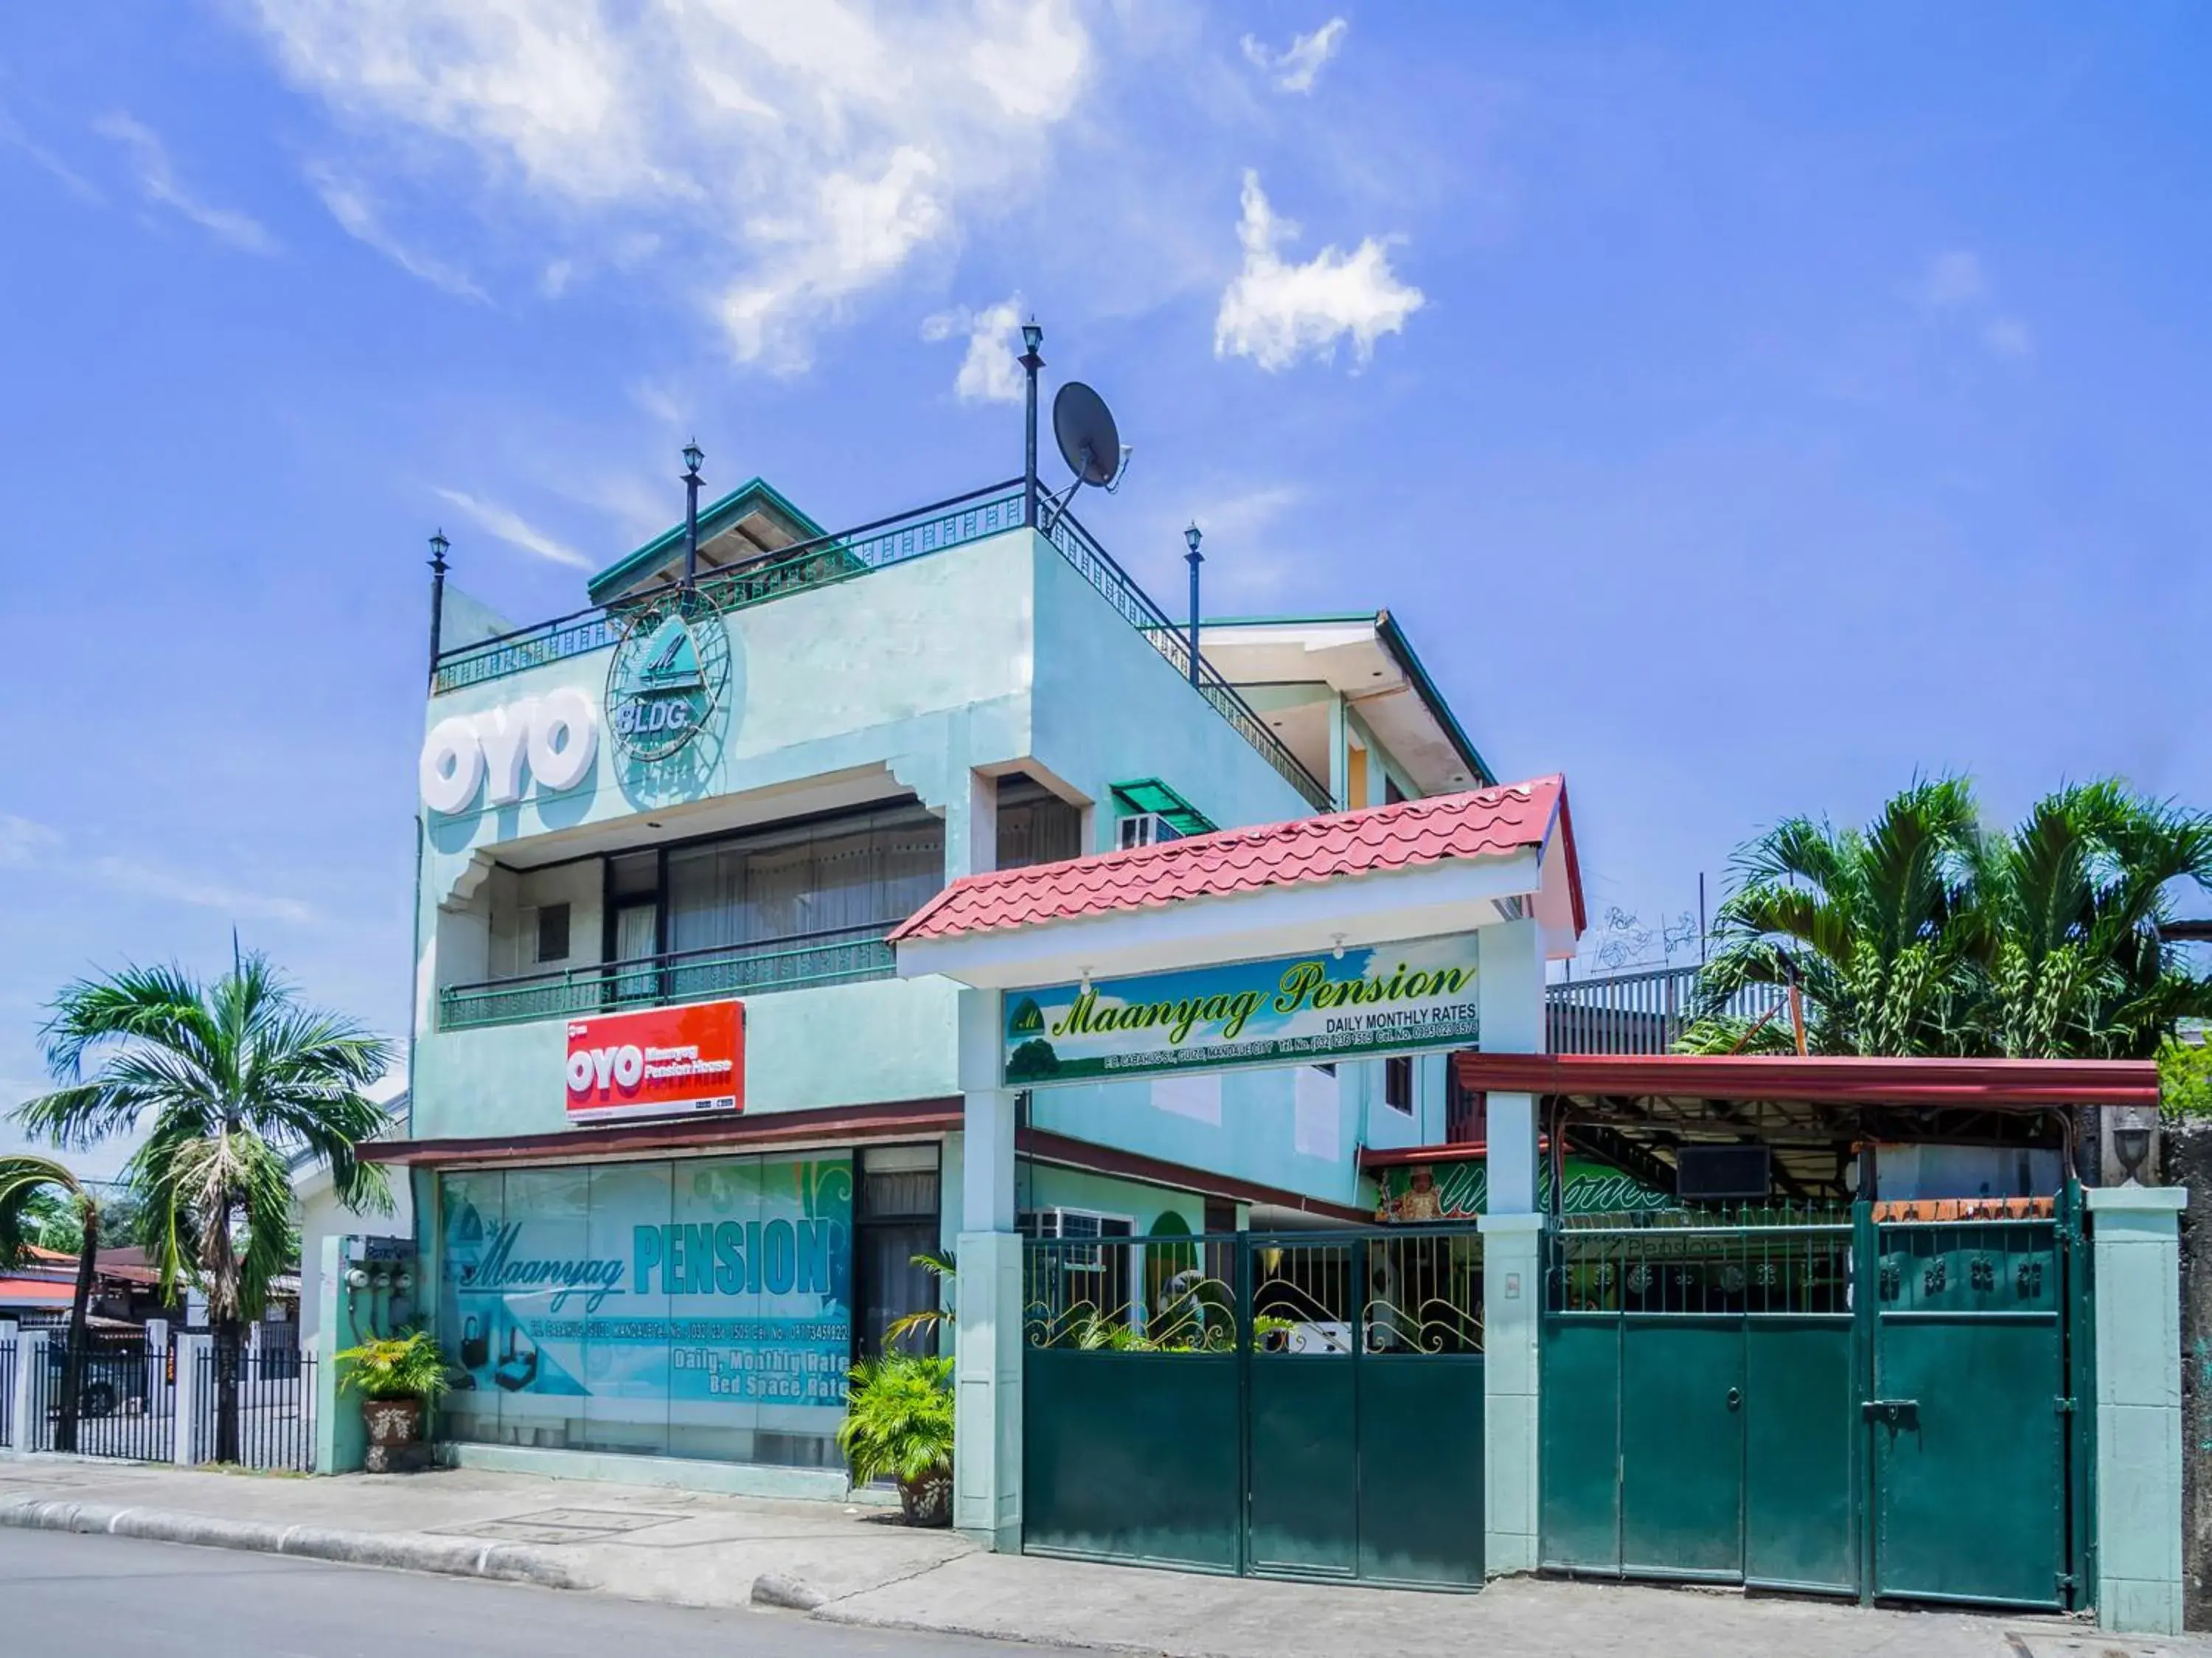 Facade/entrance, Property Building in OYO 166 Maanyag Pension House